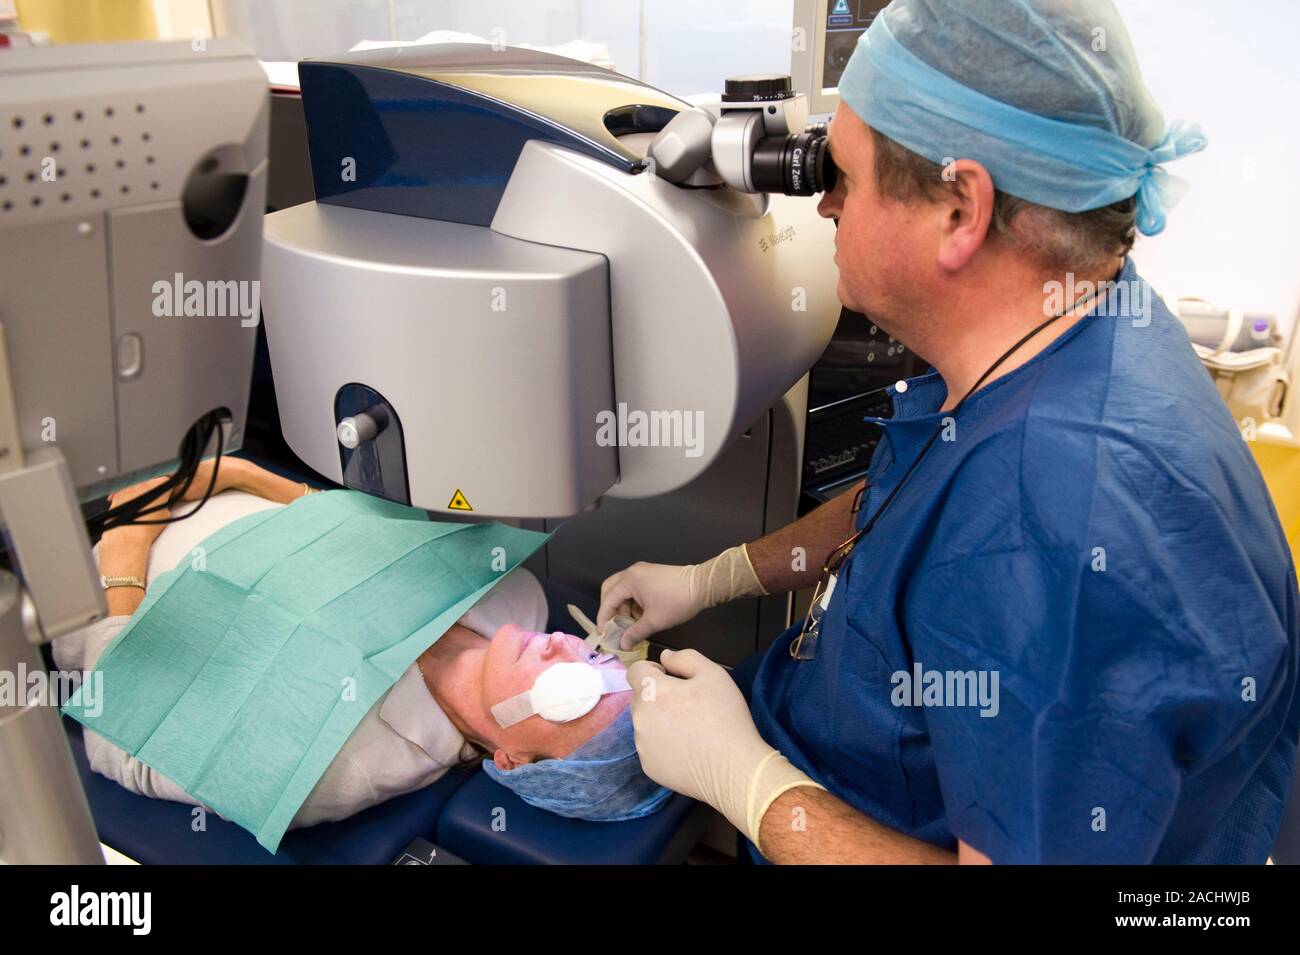 La chirurgie oculaire au laser. Contrôle d'un chirurgien ophtalmique yeux  du patient après la chirurgie oculaire réfractive au laser excimer. La  chirurgie réfractive au laser Excimer Photo Stock - Alamy